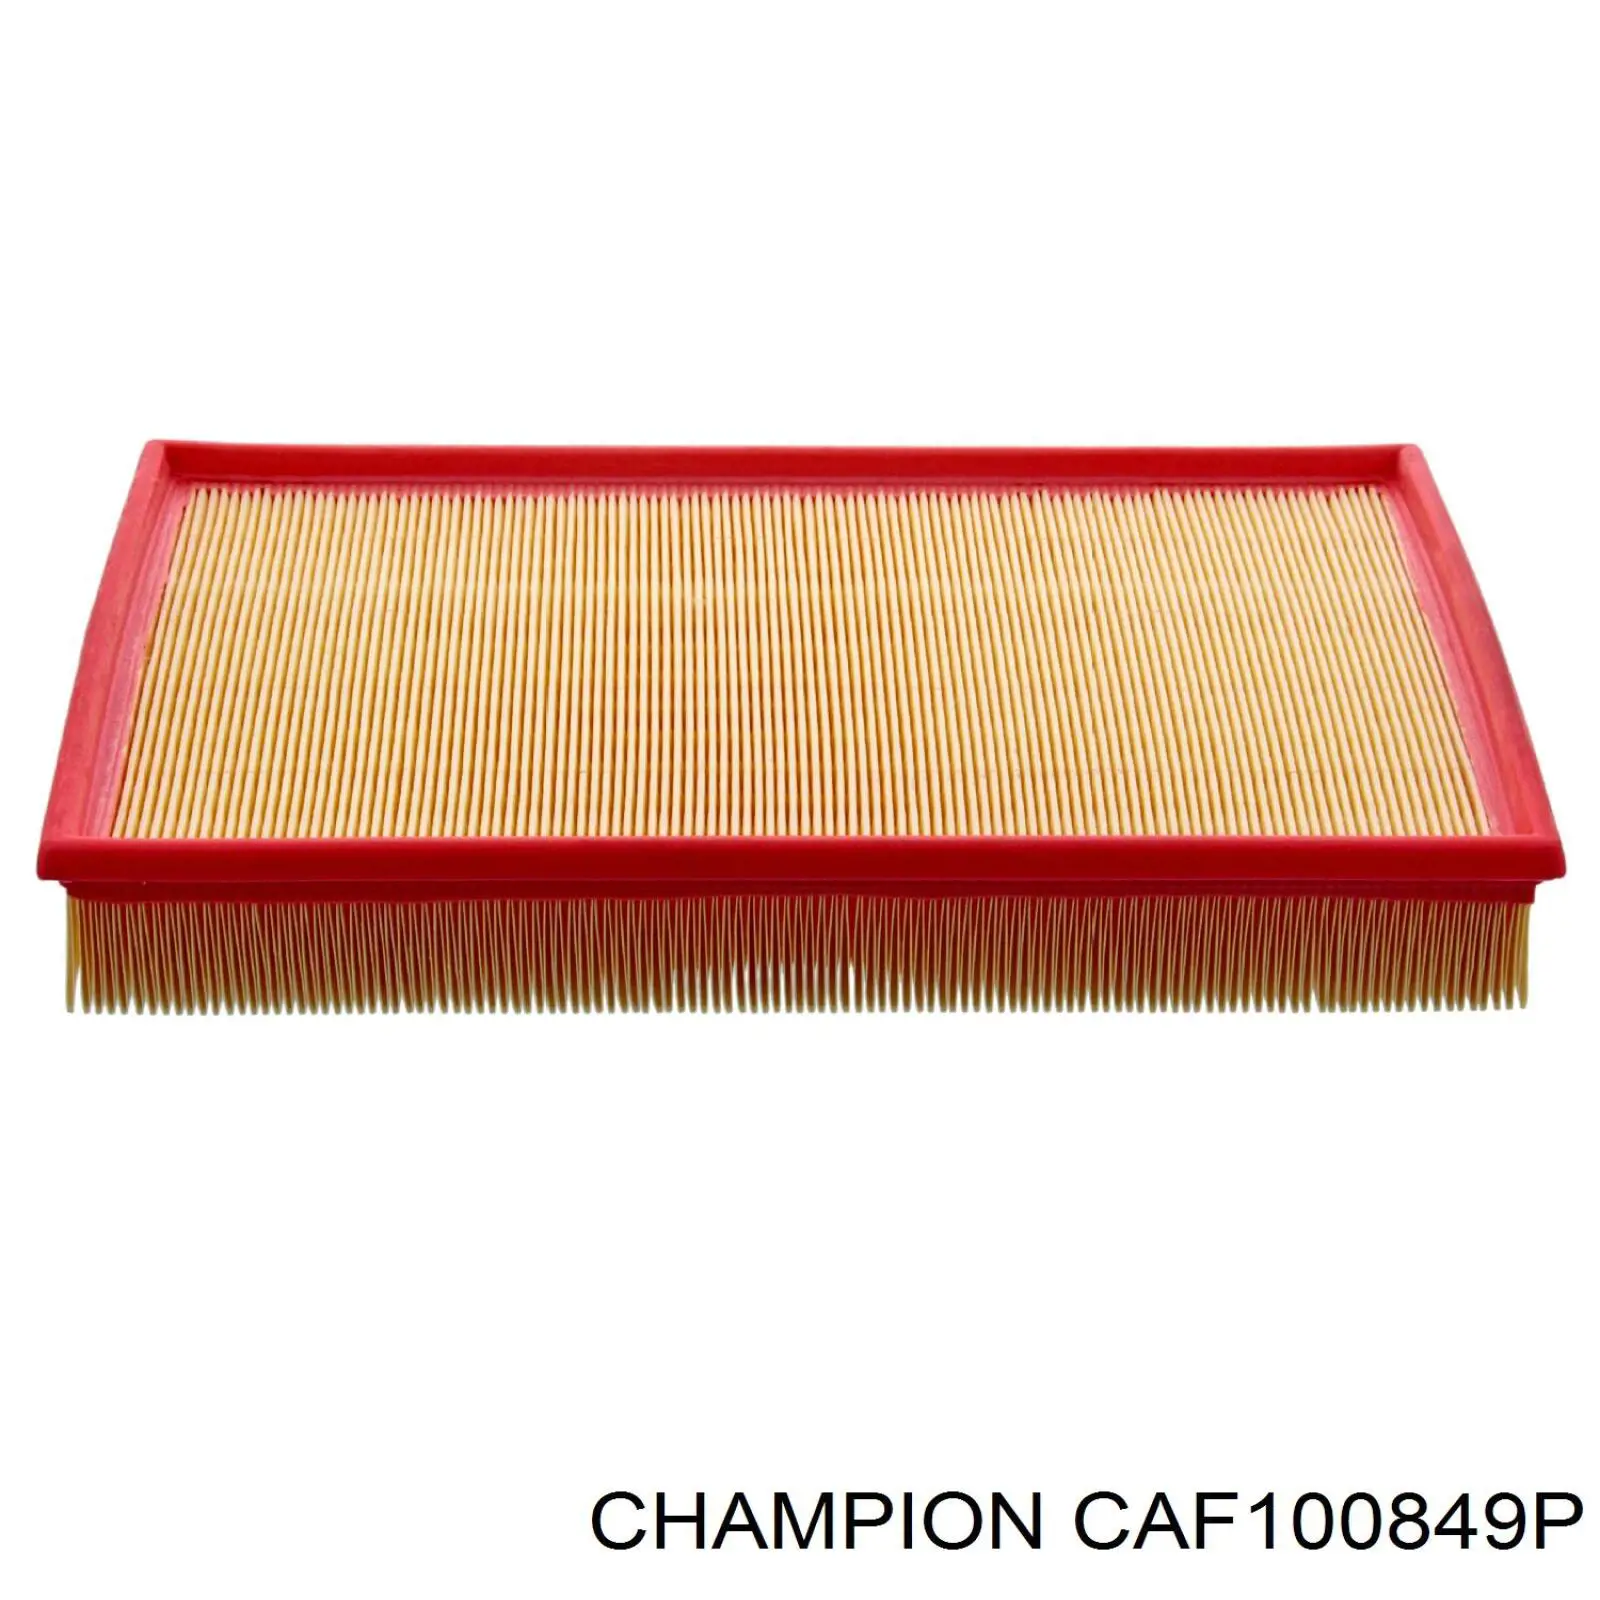 CAF100849P Champion filtro de aire